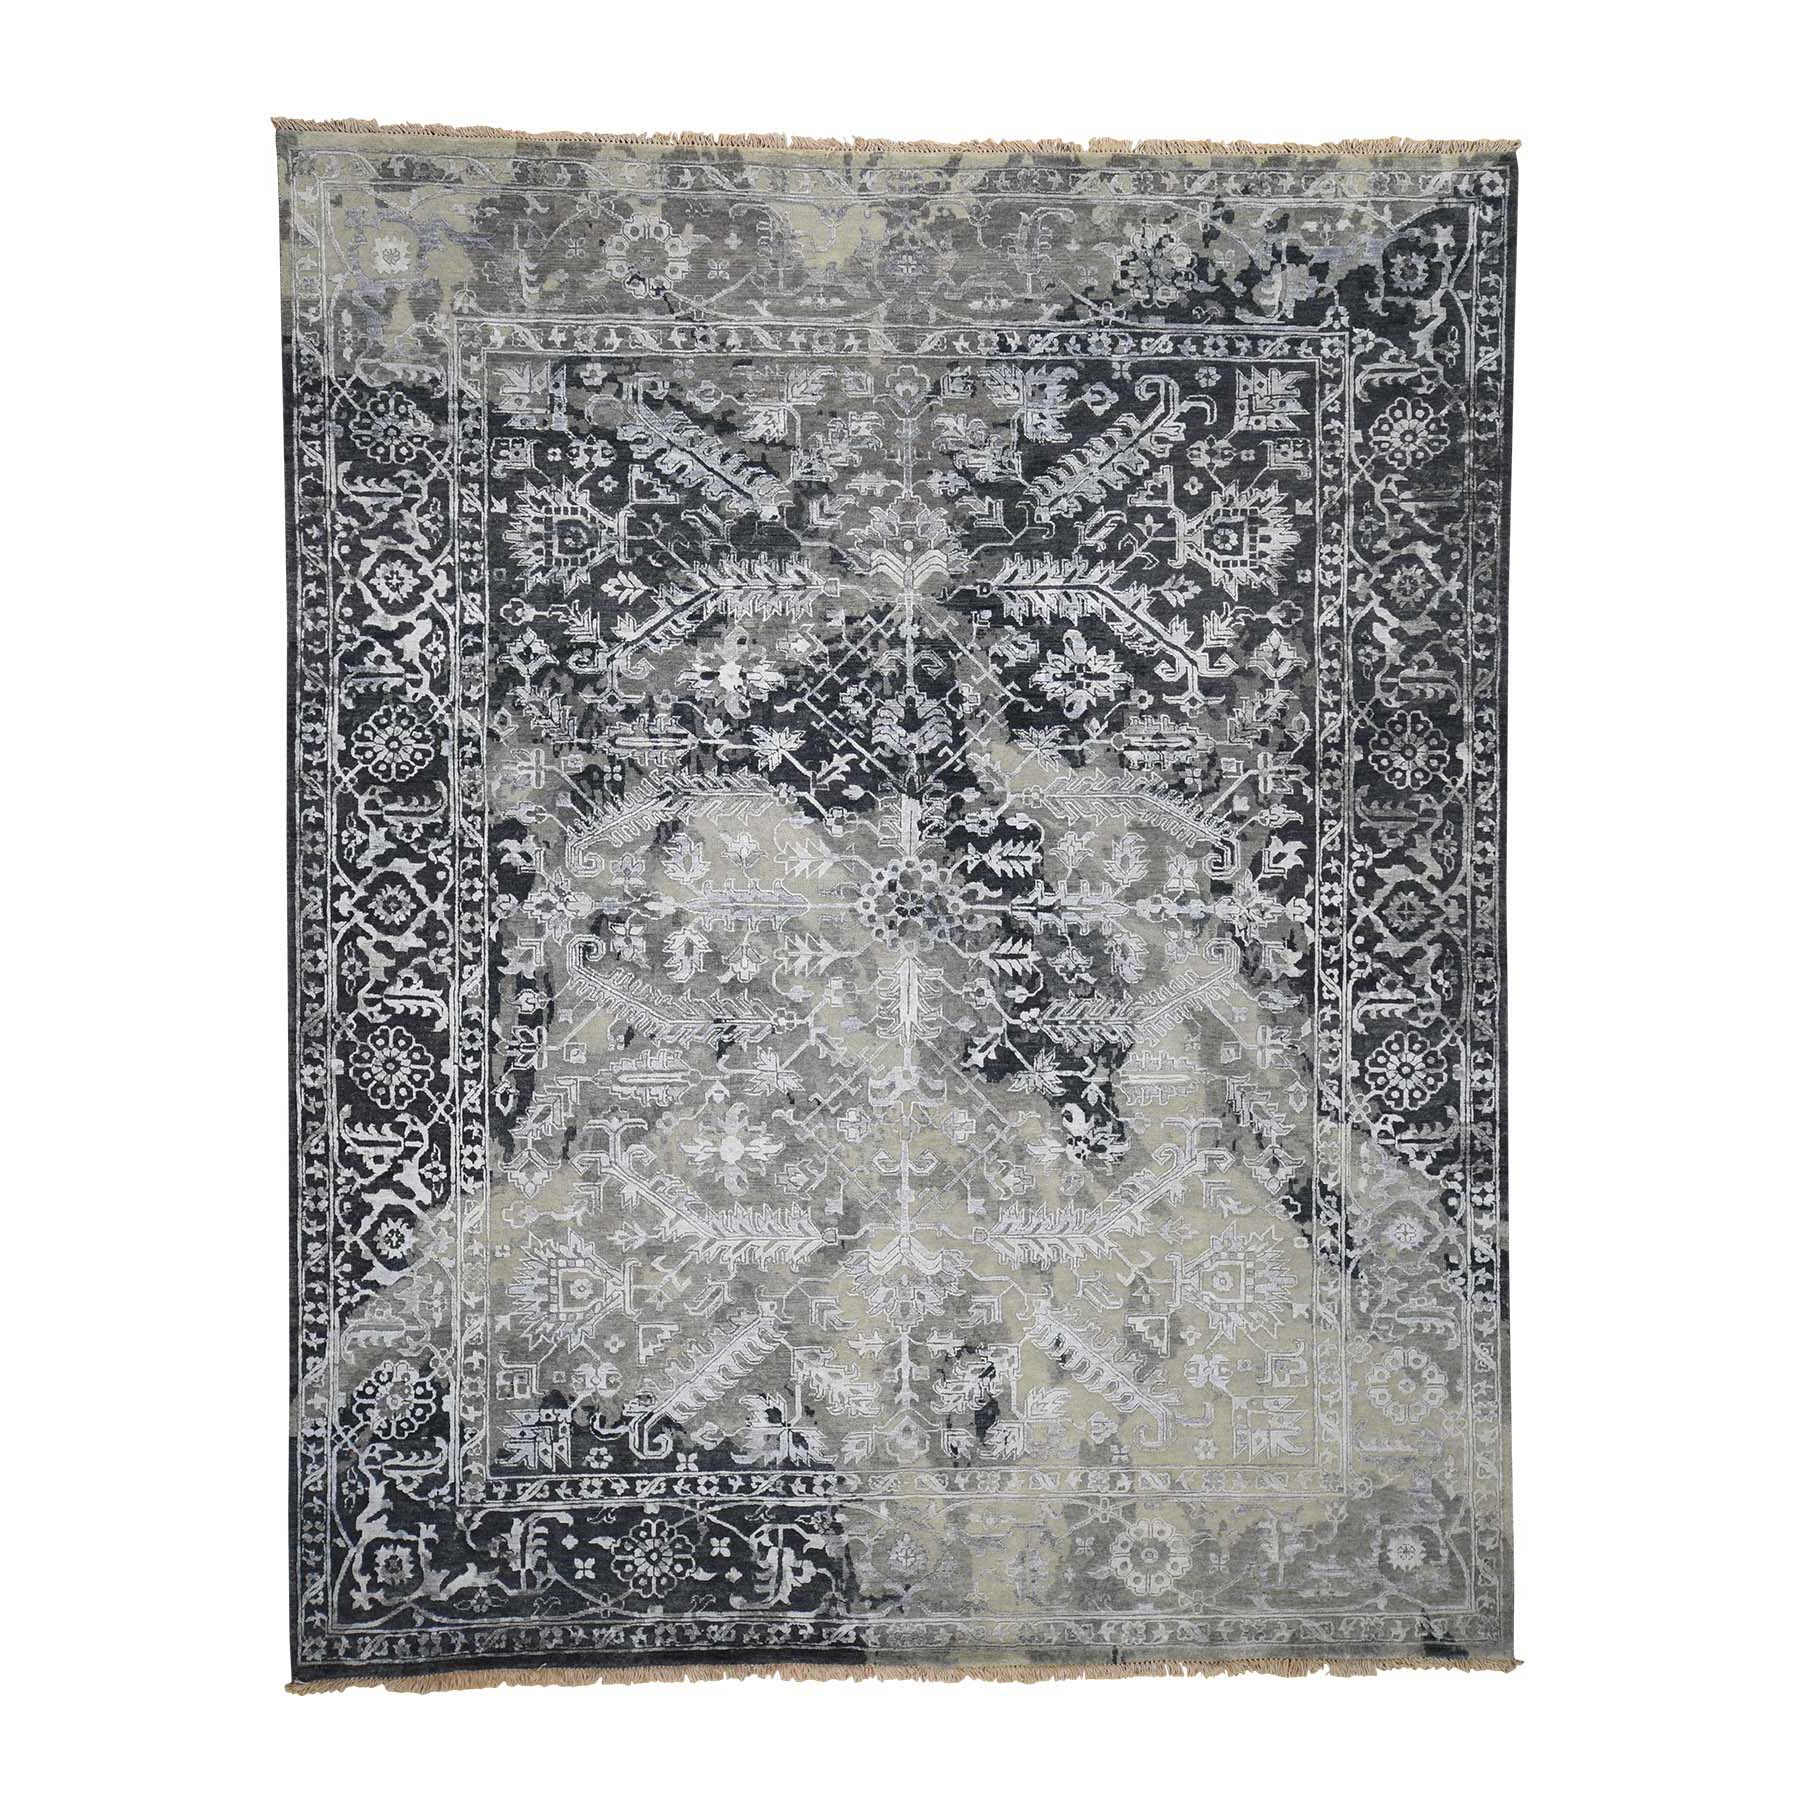 8'x10' All Over Design Broken Persian Heriz Wool And Silk Hand Woven Oriental Rug 